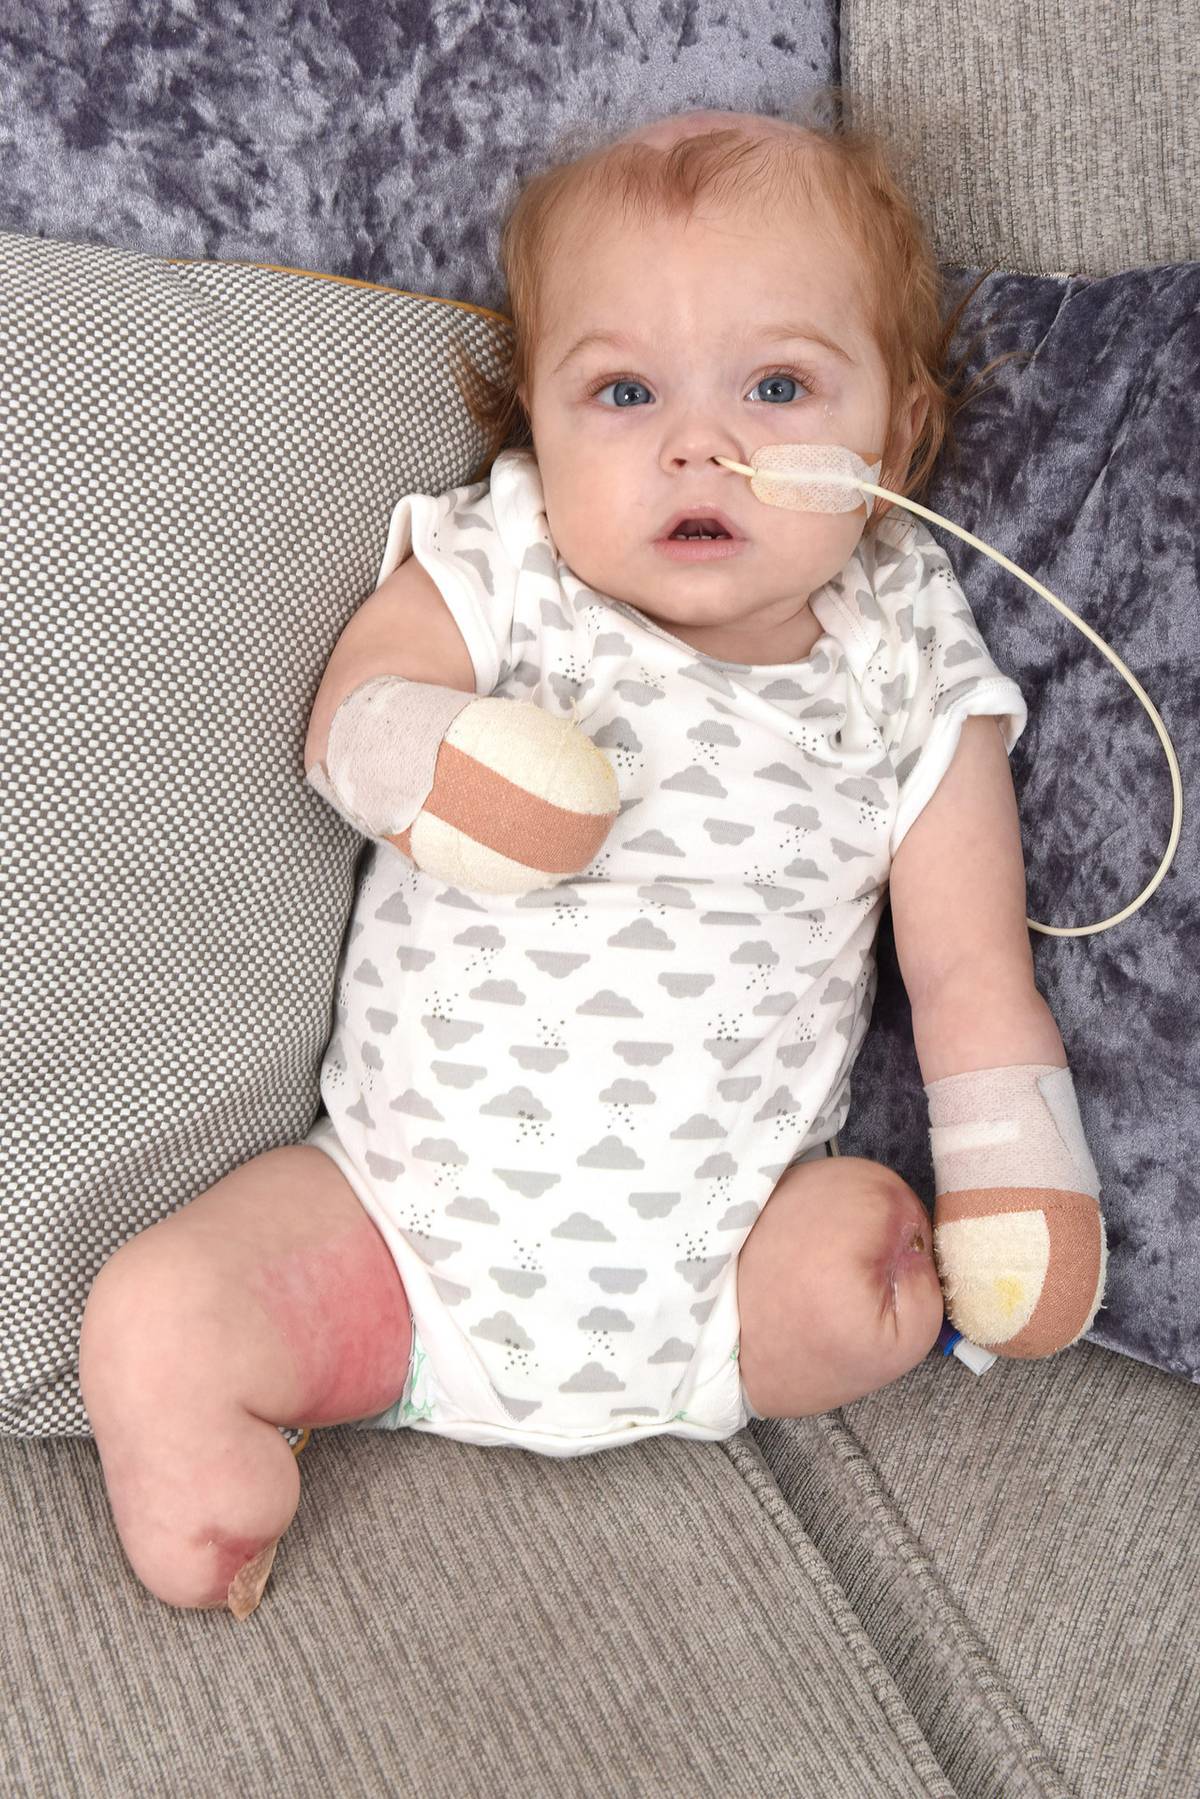 Sepsis nightmare: UK mother reveals baby's leg detached 'in her hand' - New Zealand Herald thumbnail